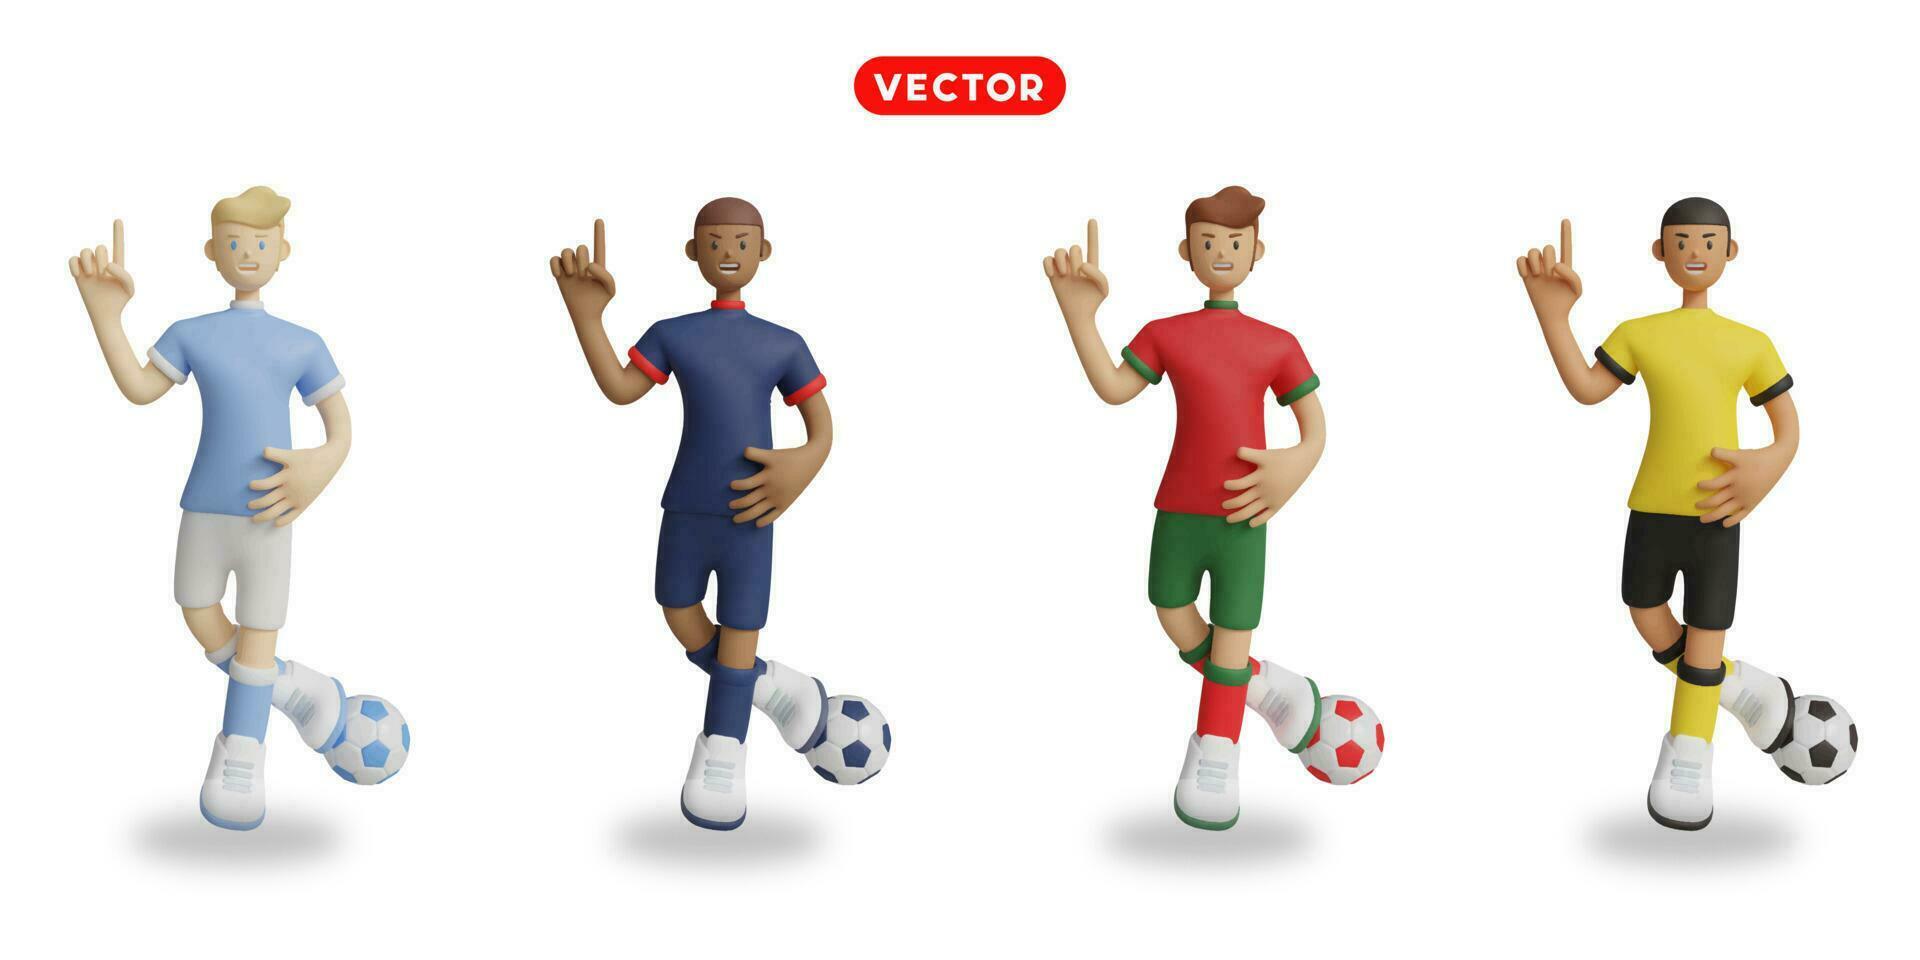 Amerikaans voetbal spelers in lucht blauw, blauw, rood met groente, en geel uniformen. vector